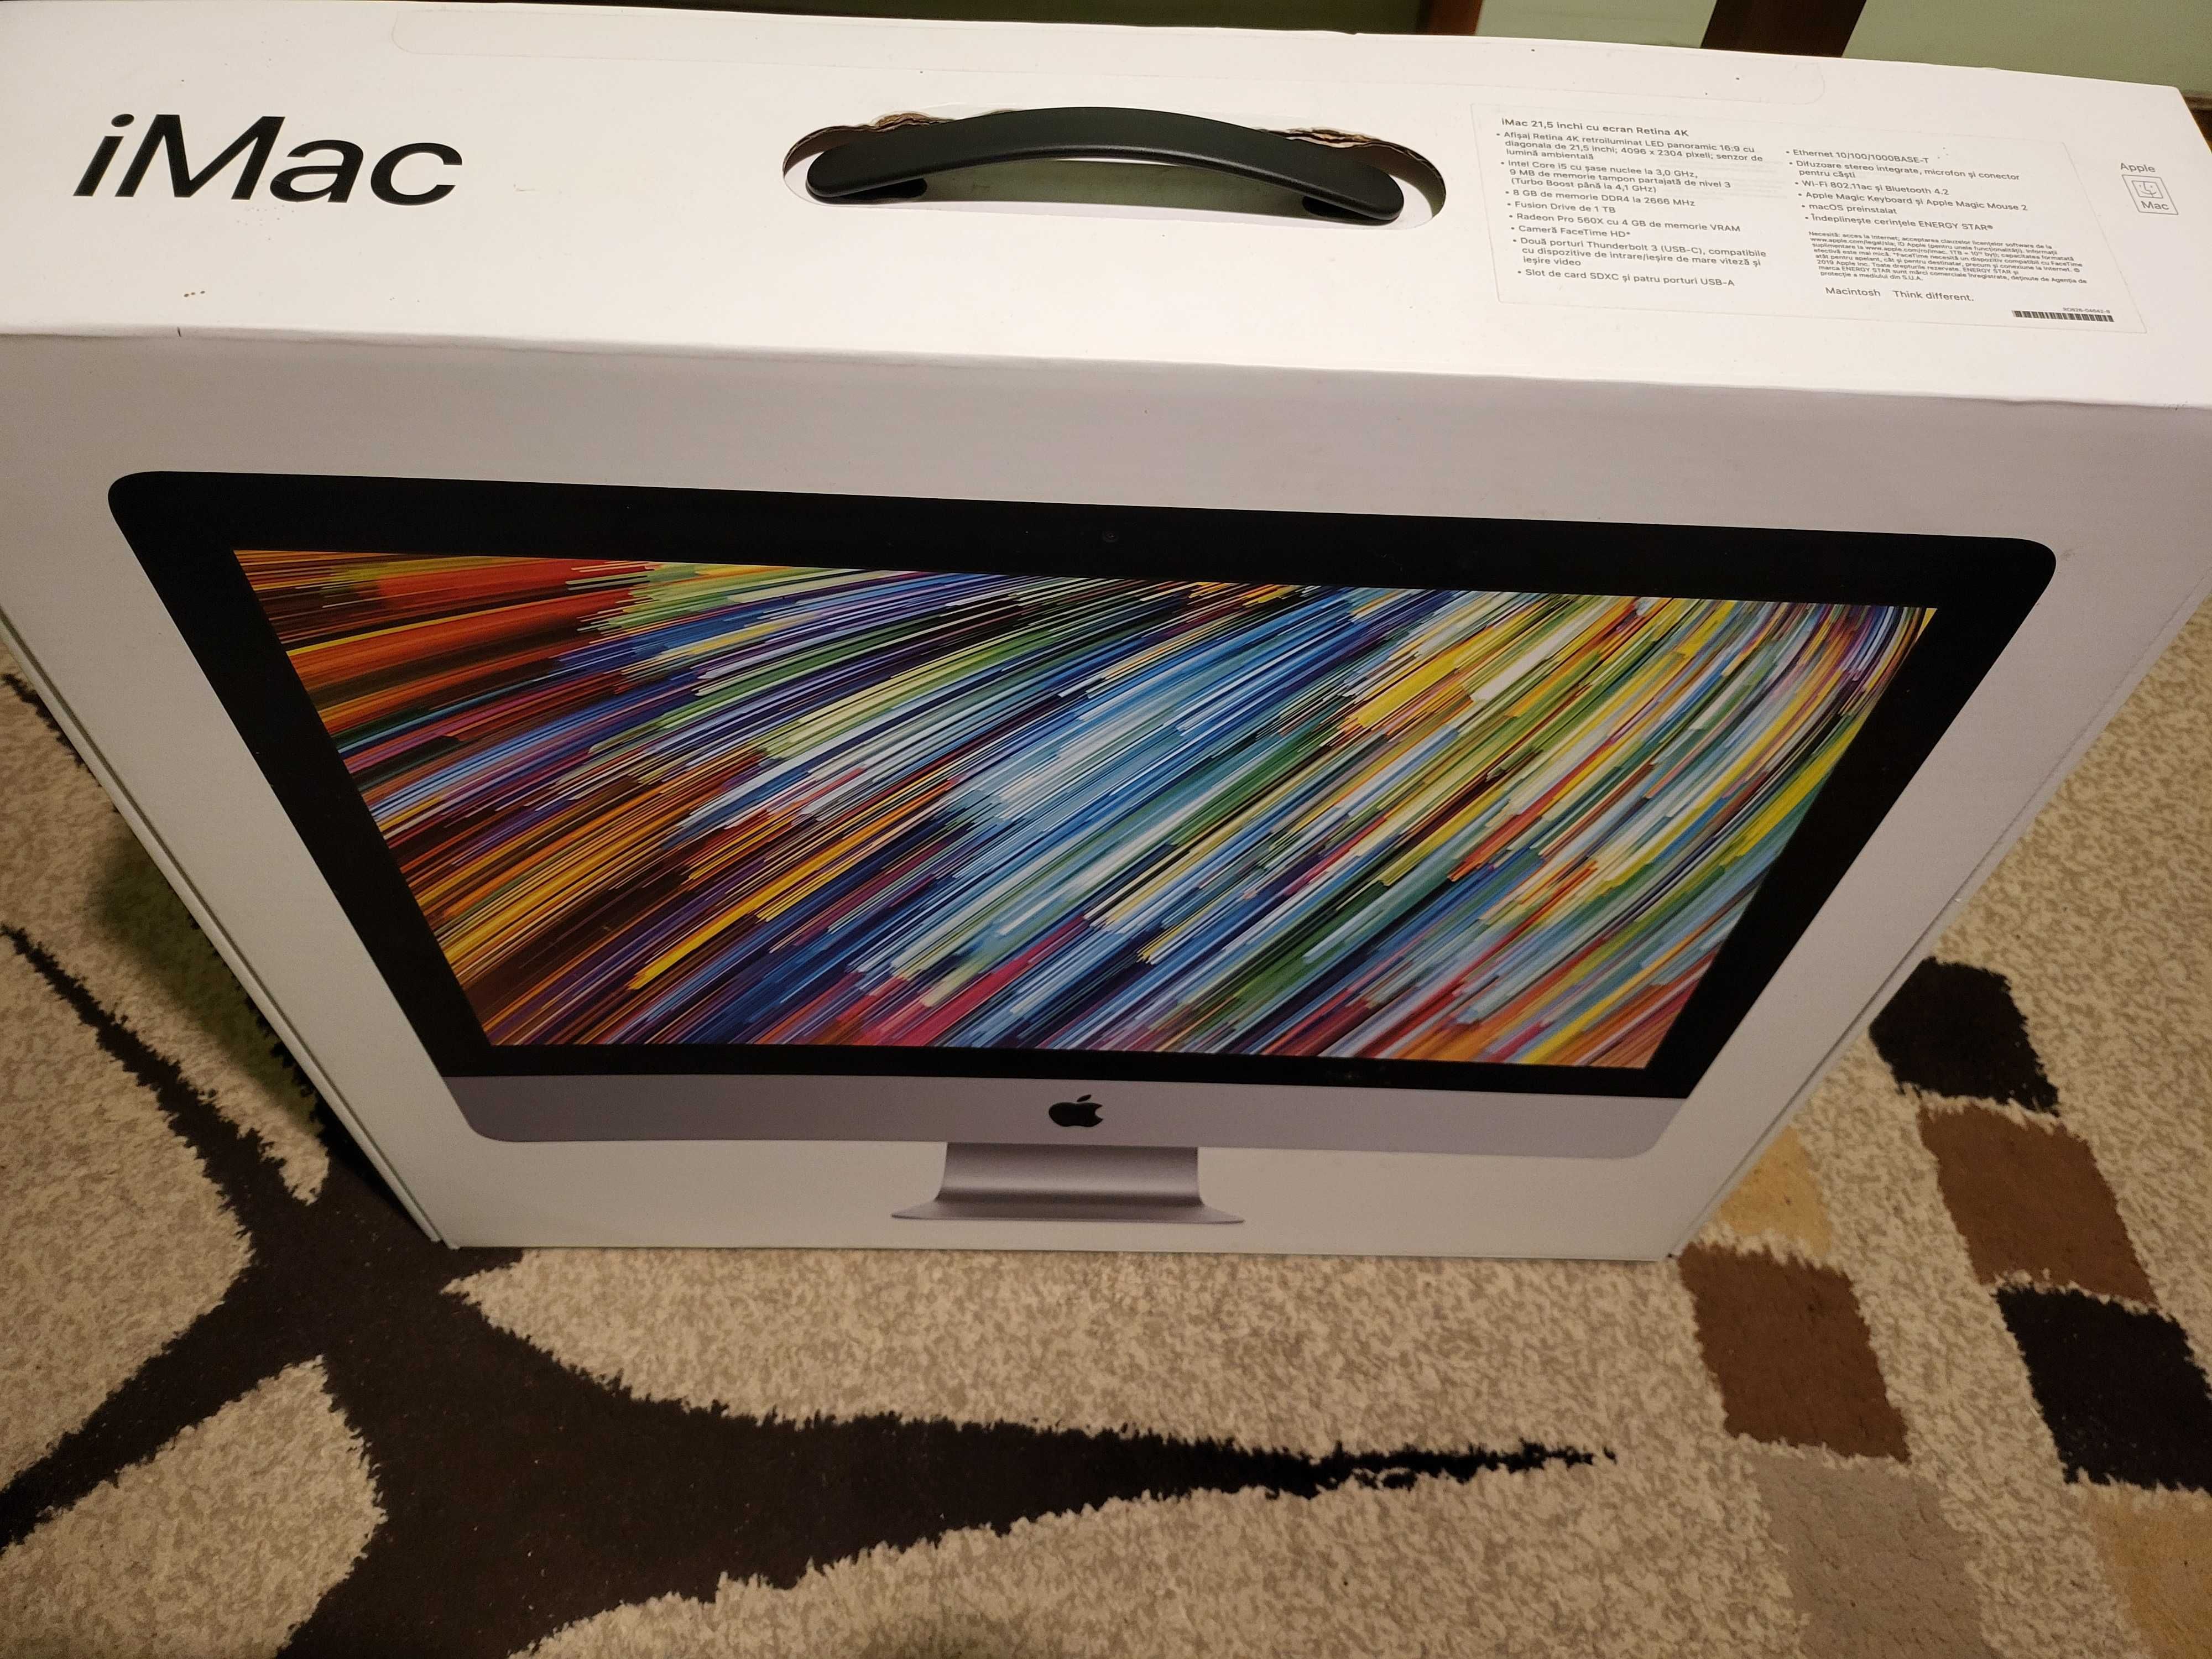 iMac 2019 ca nou Intel i5, ecran 4K de 21,5 inch + 1 Tb ssd/8 gb Ram